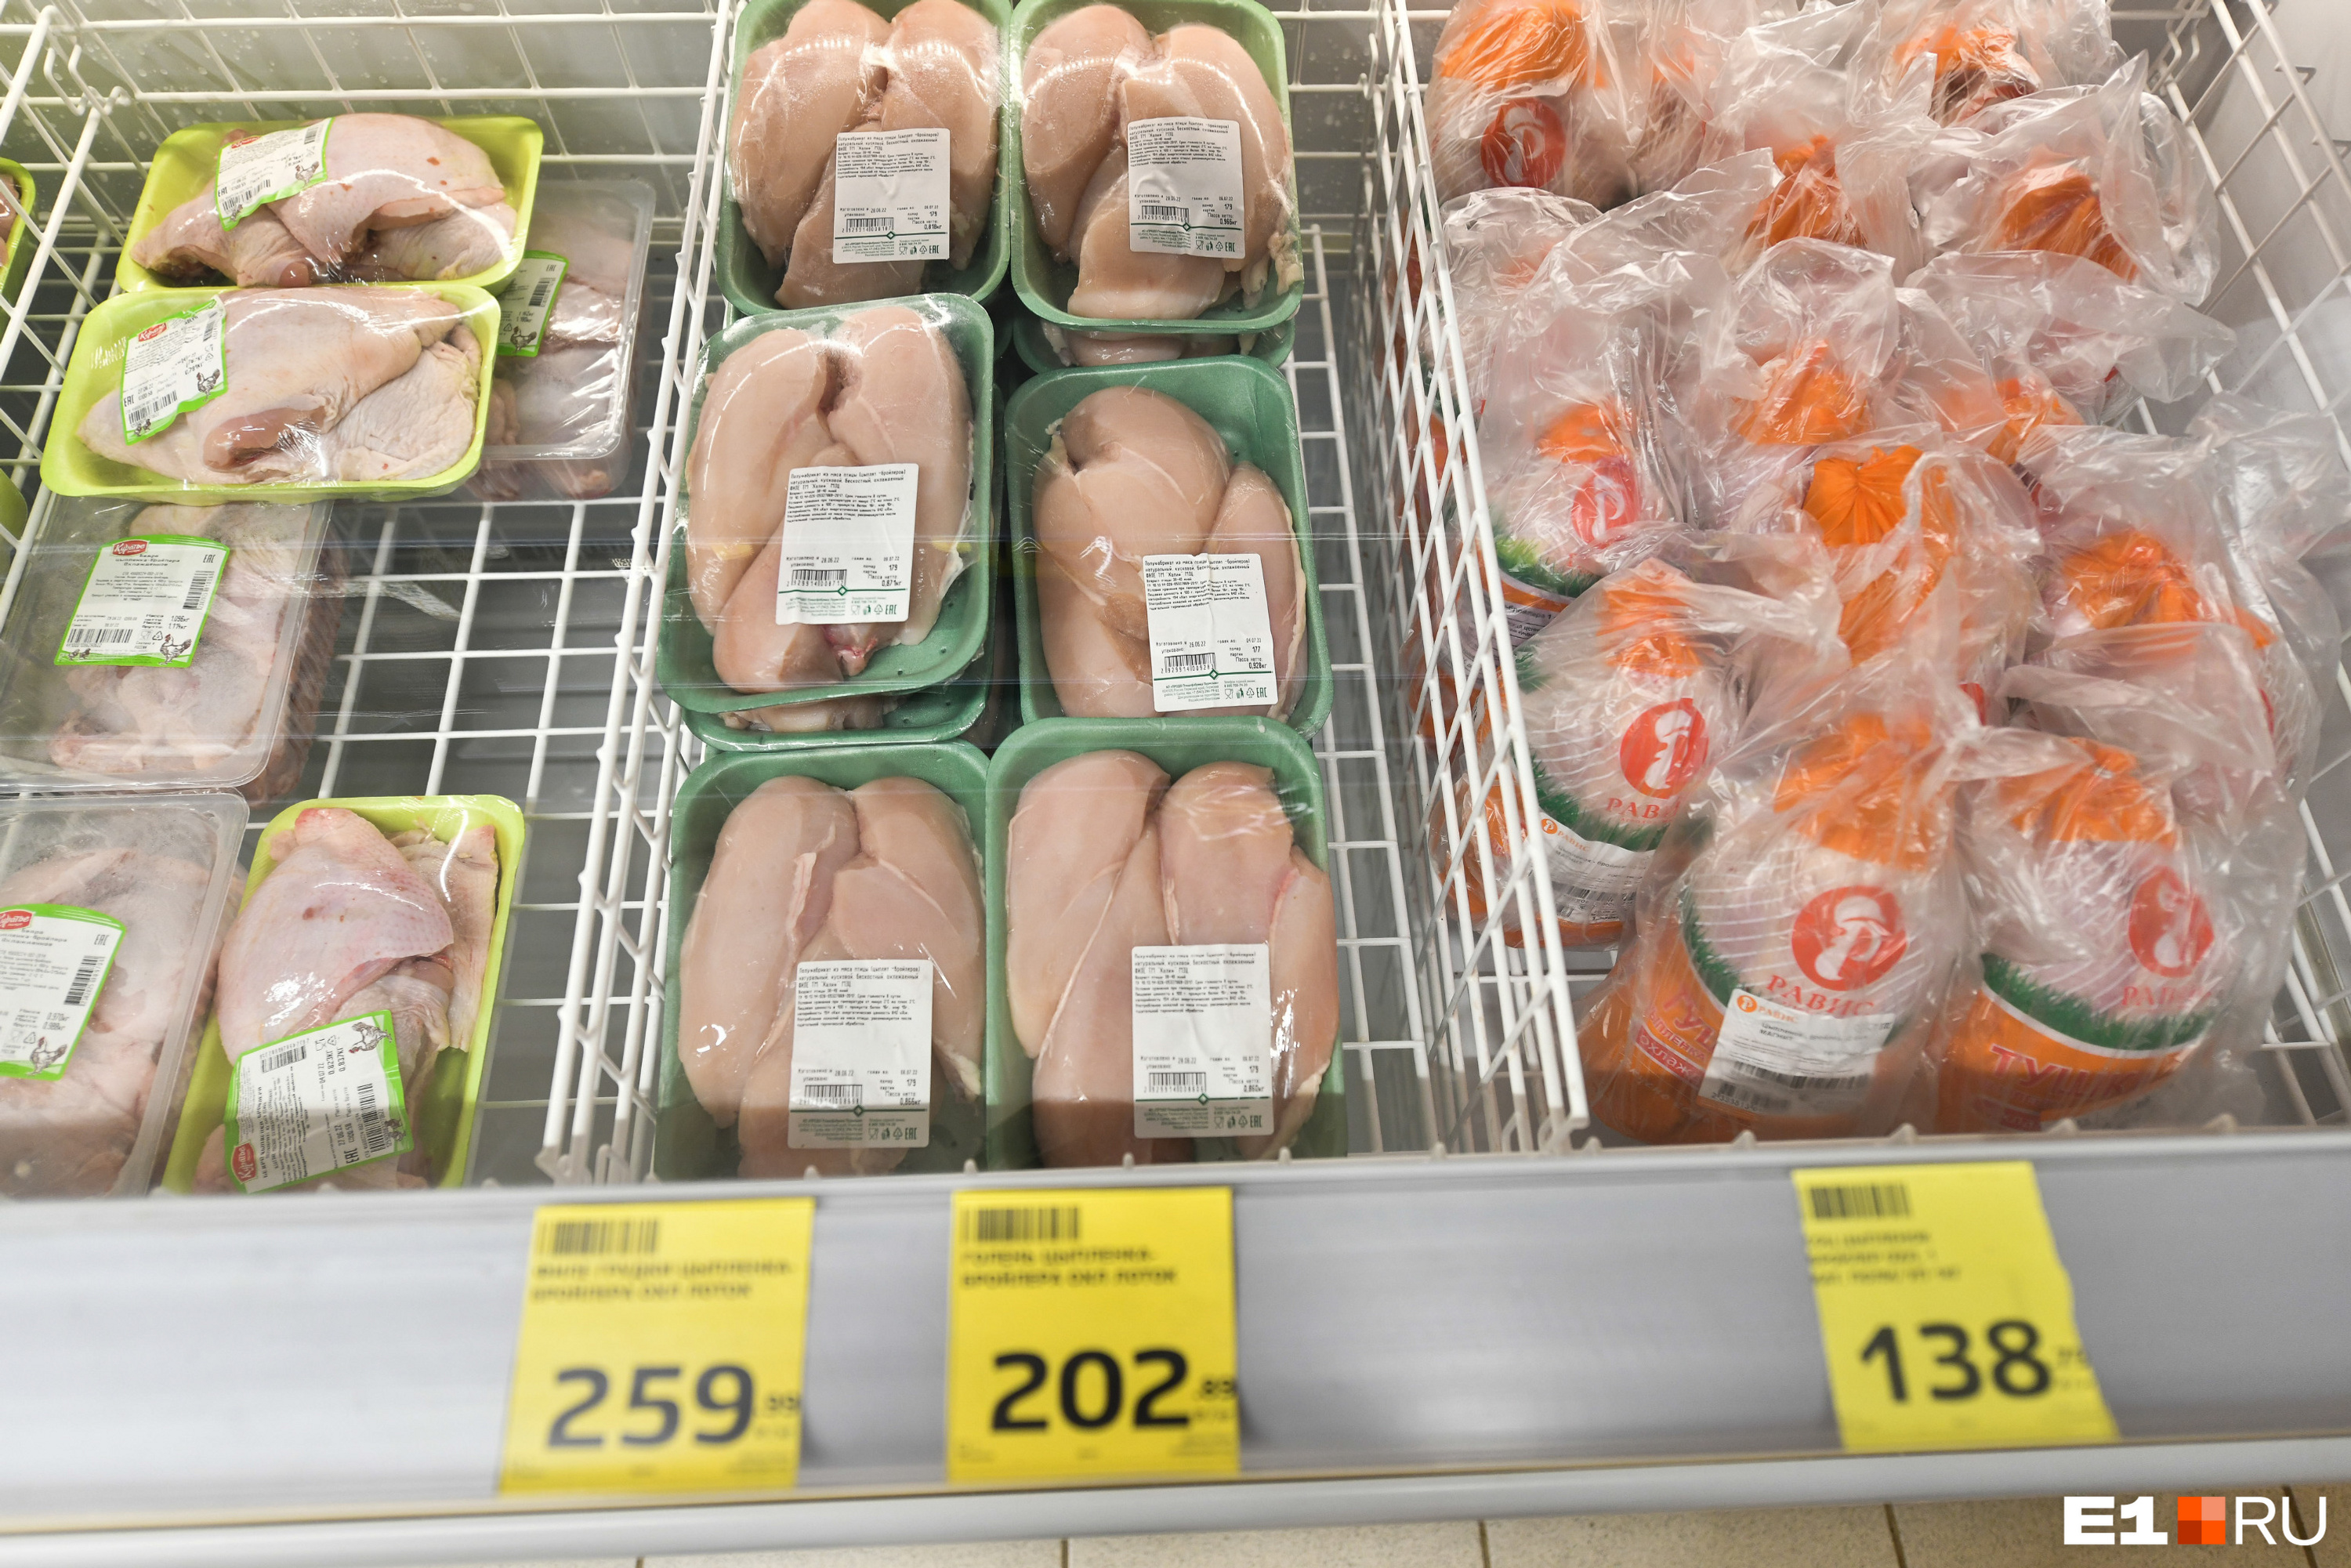 Мясо дешевле, чем в других магазинах